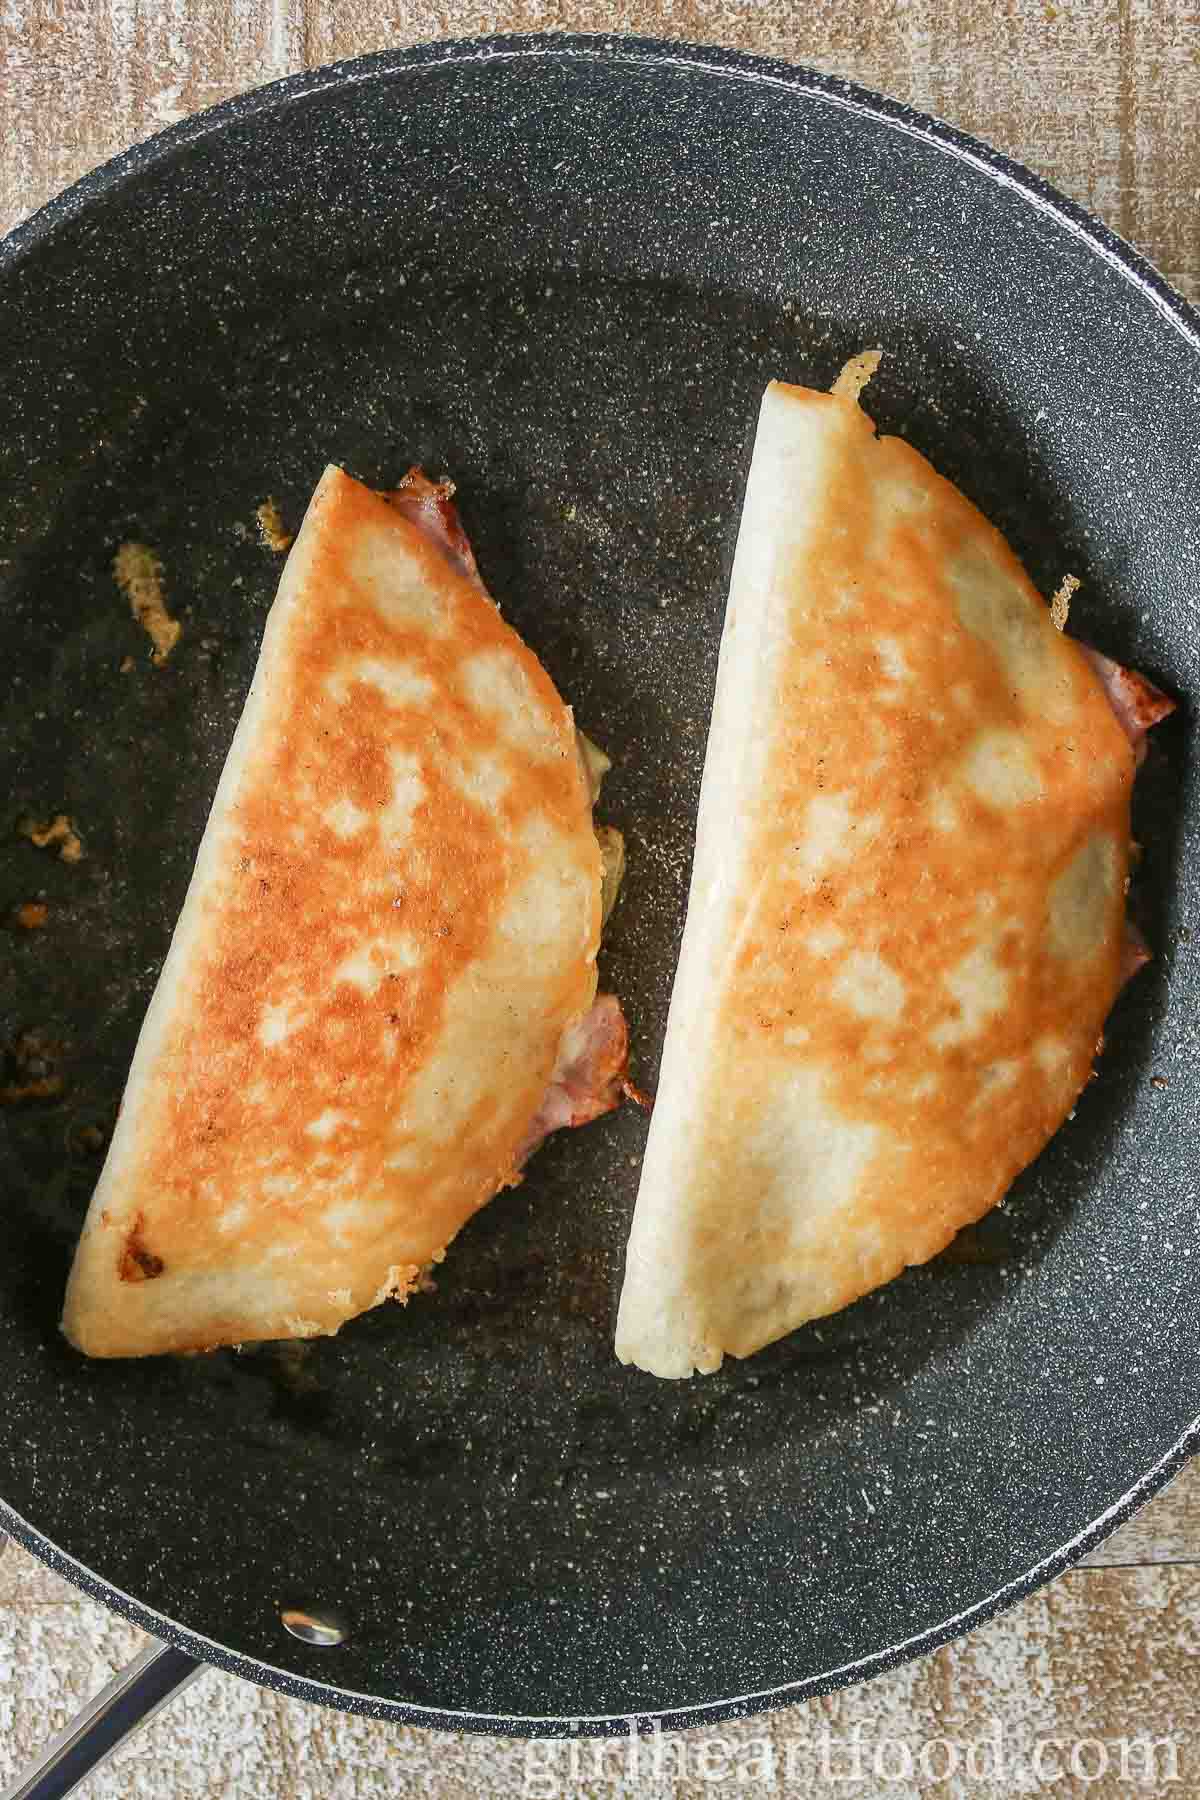 Two crispy quesadillas in a frying pan.